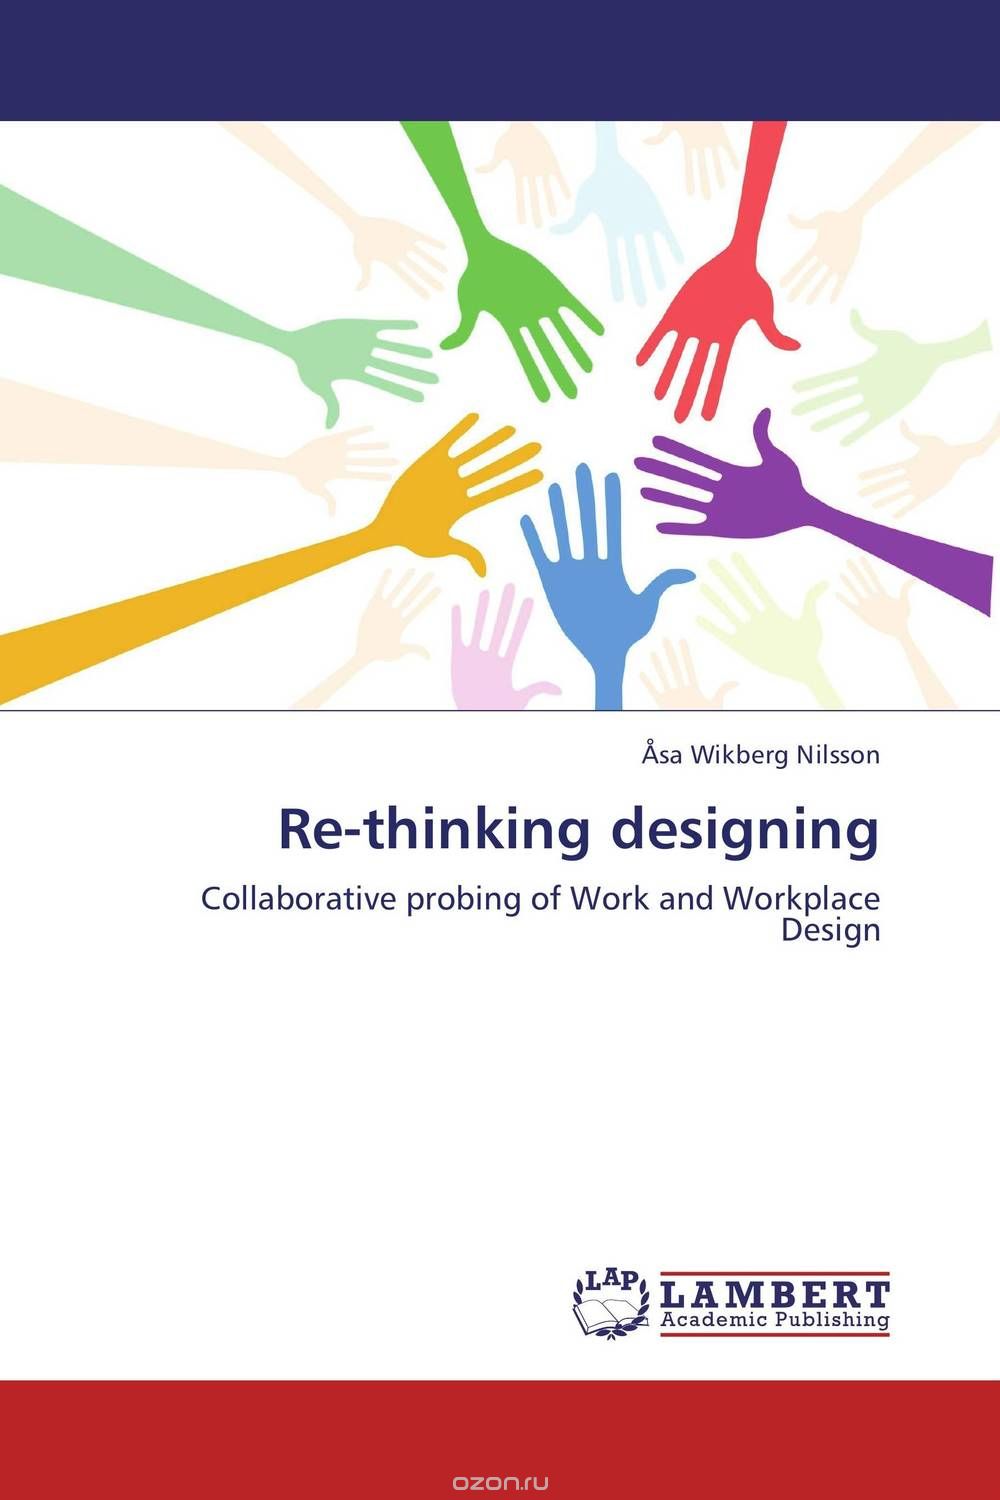 Скачать книгу "Re-thinking designing"